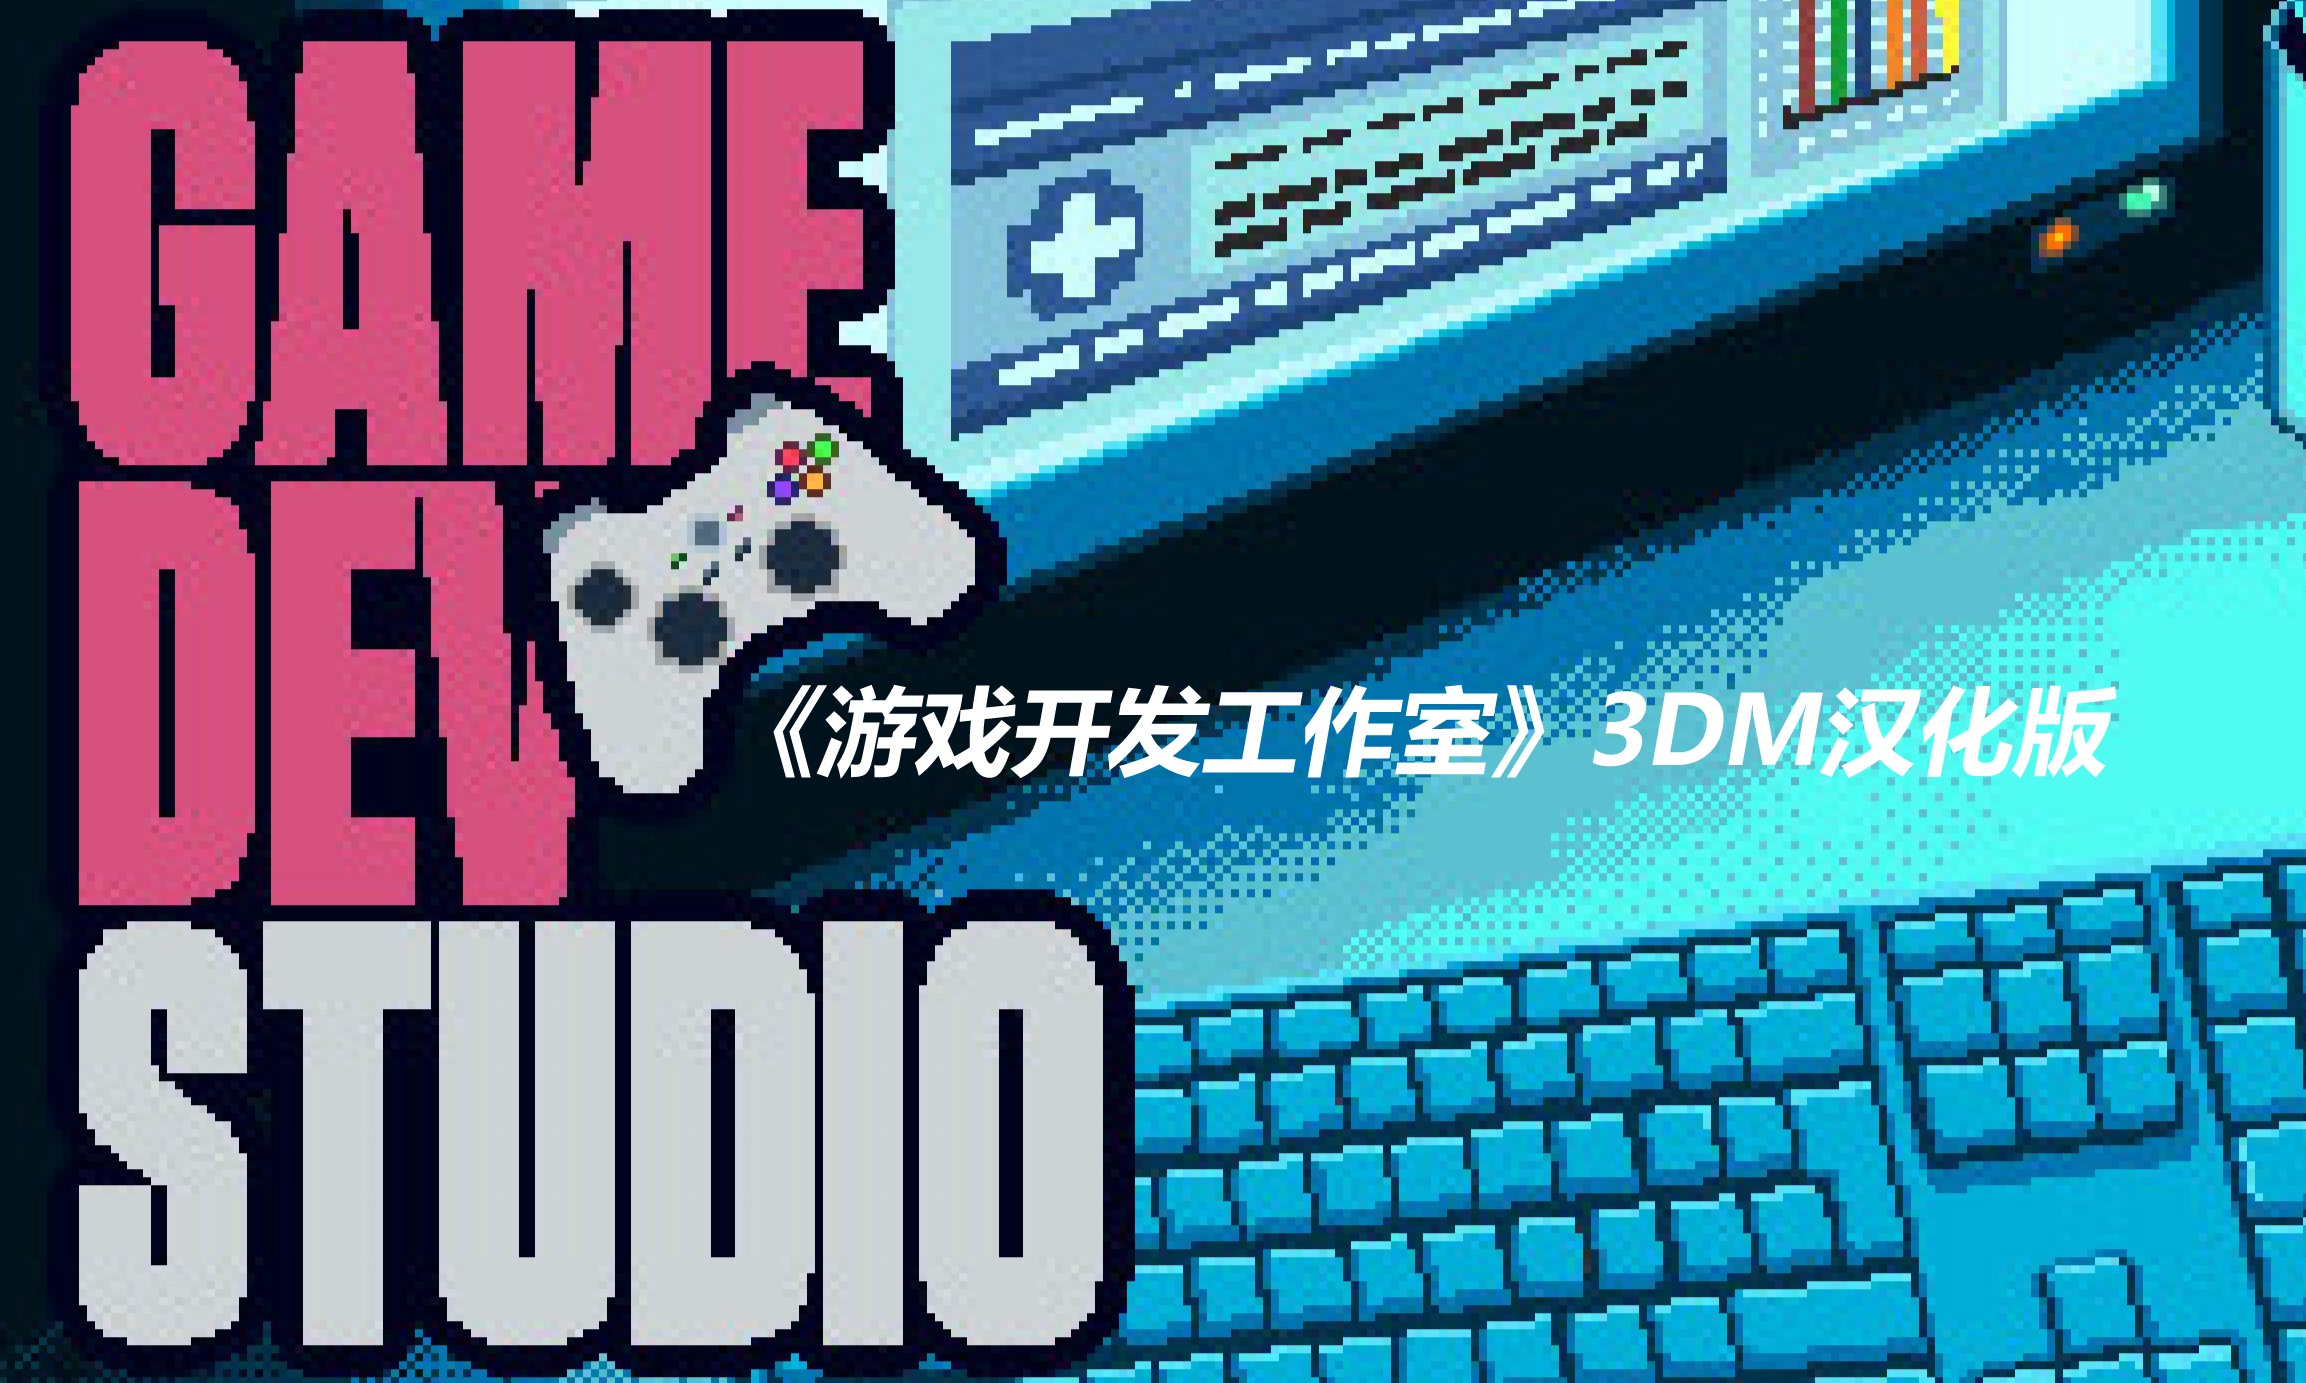 3DM《游戏开发工作室》完整汉化下载 体验开发游戏